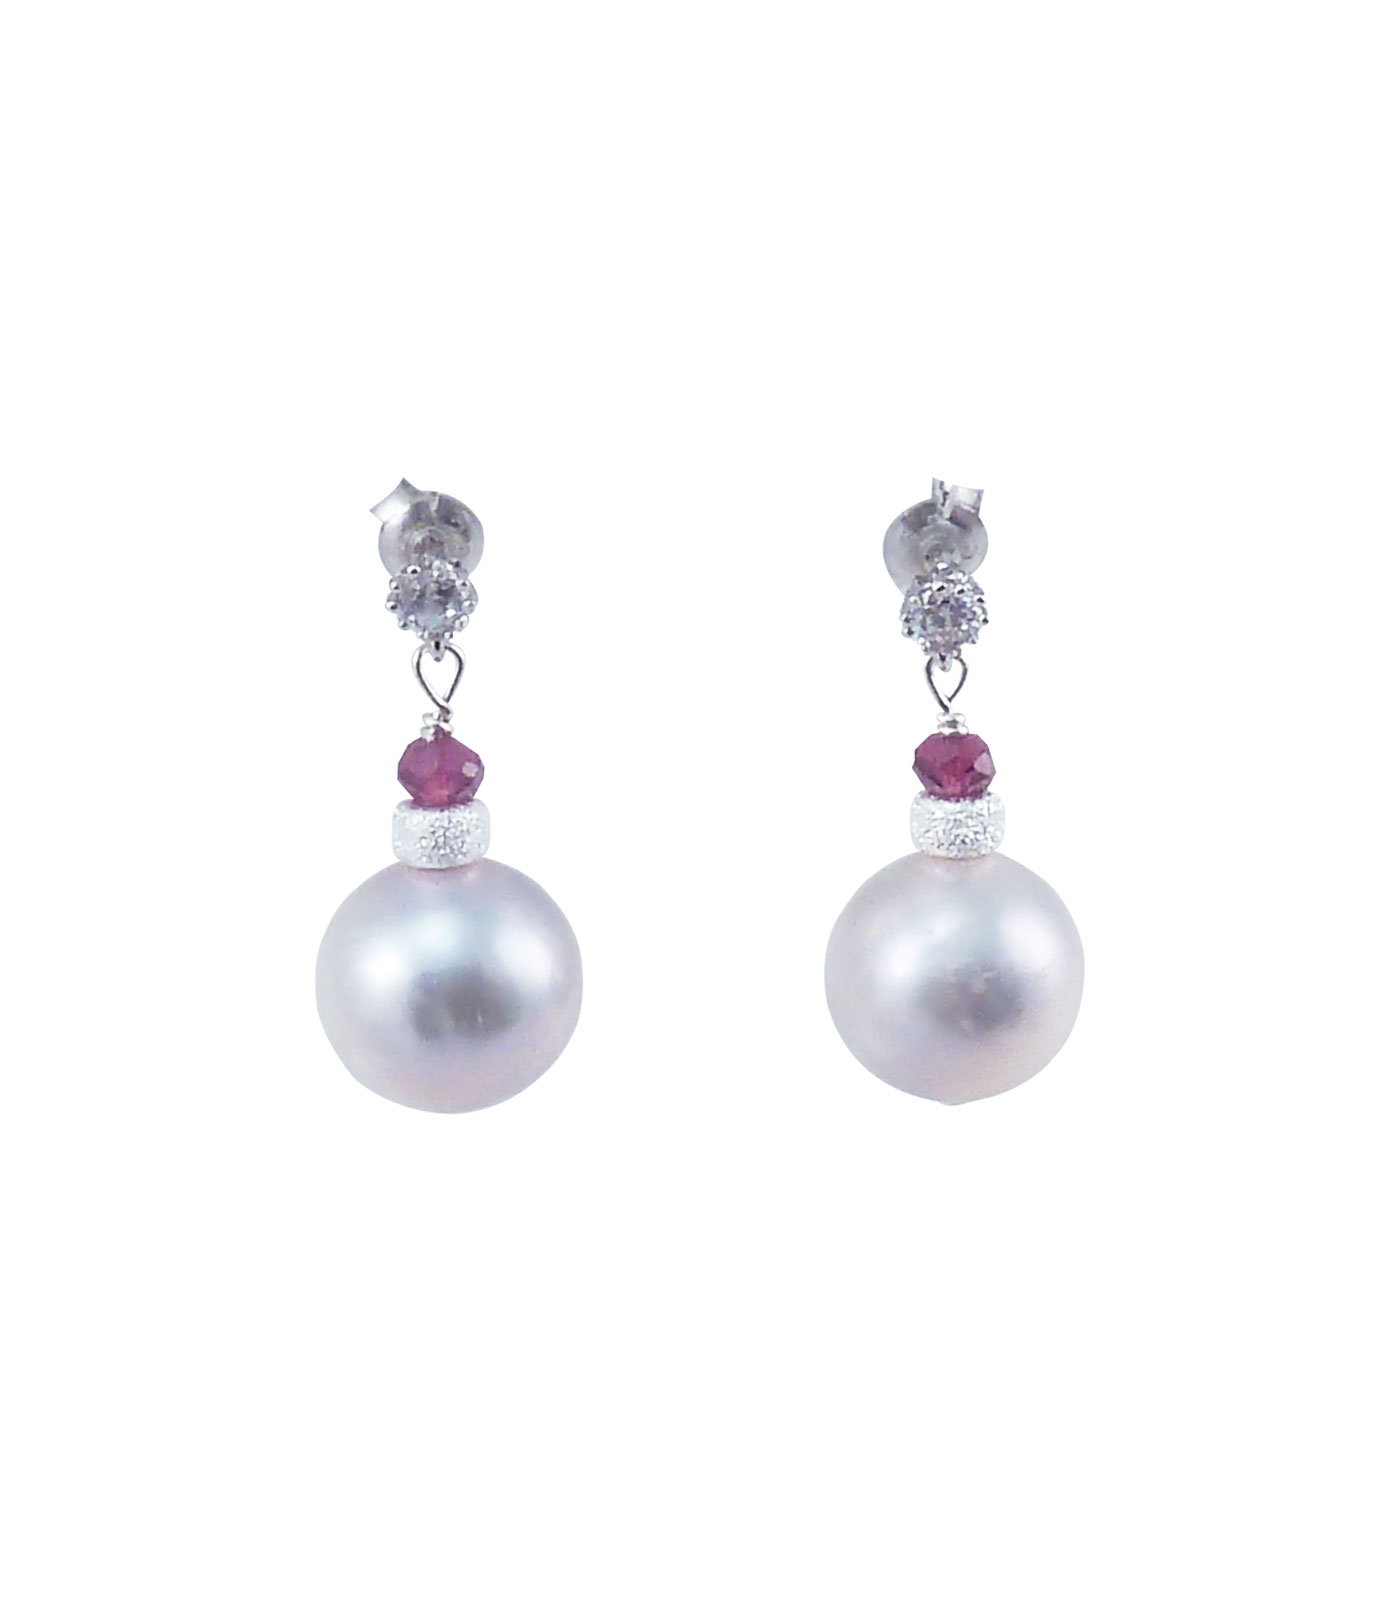 Designer pearl earrings grey pearls. Modern pearl jewelry